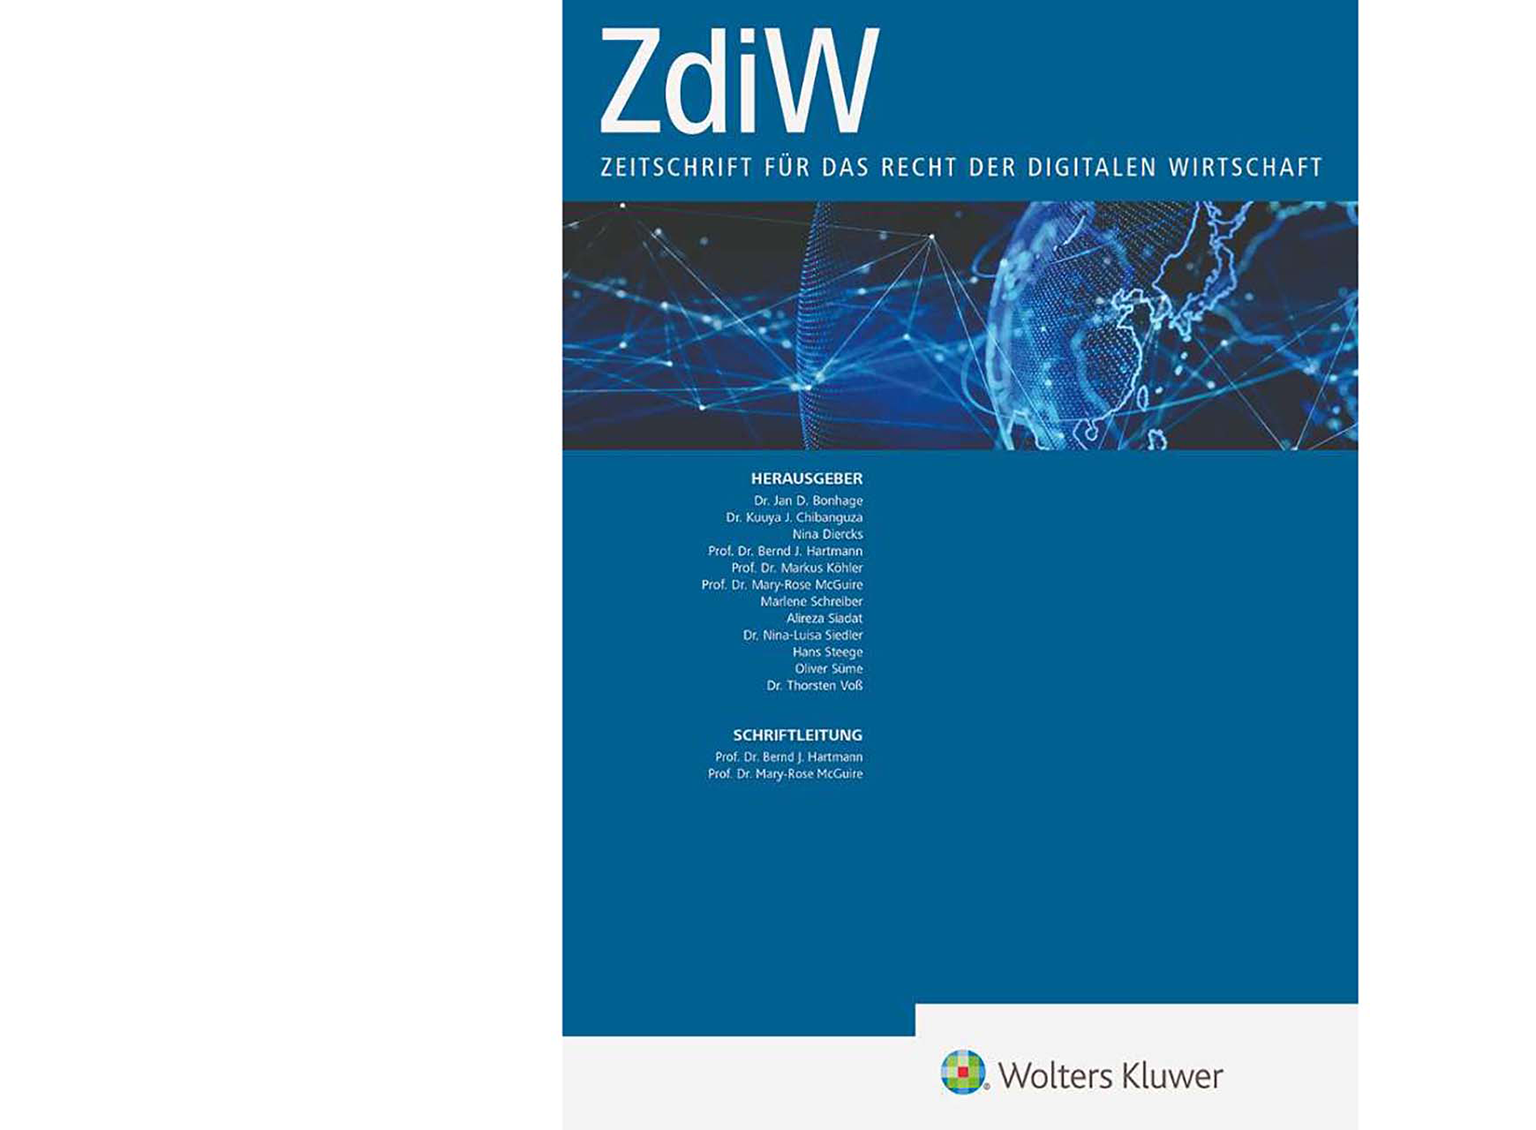 ZdiW-Zeitschrift-Cover